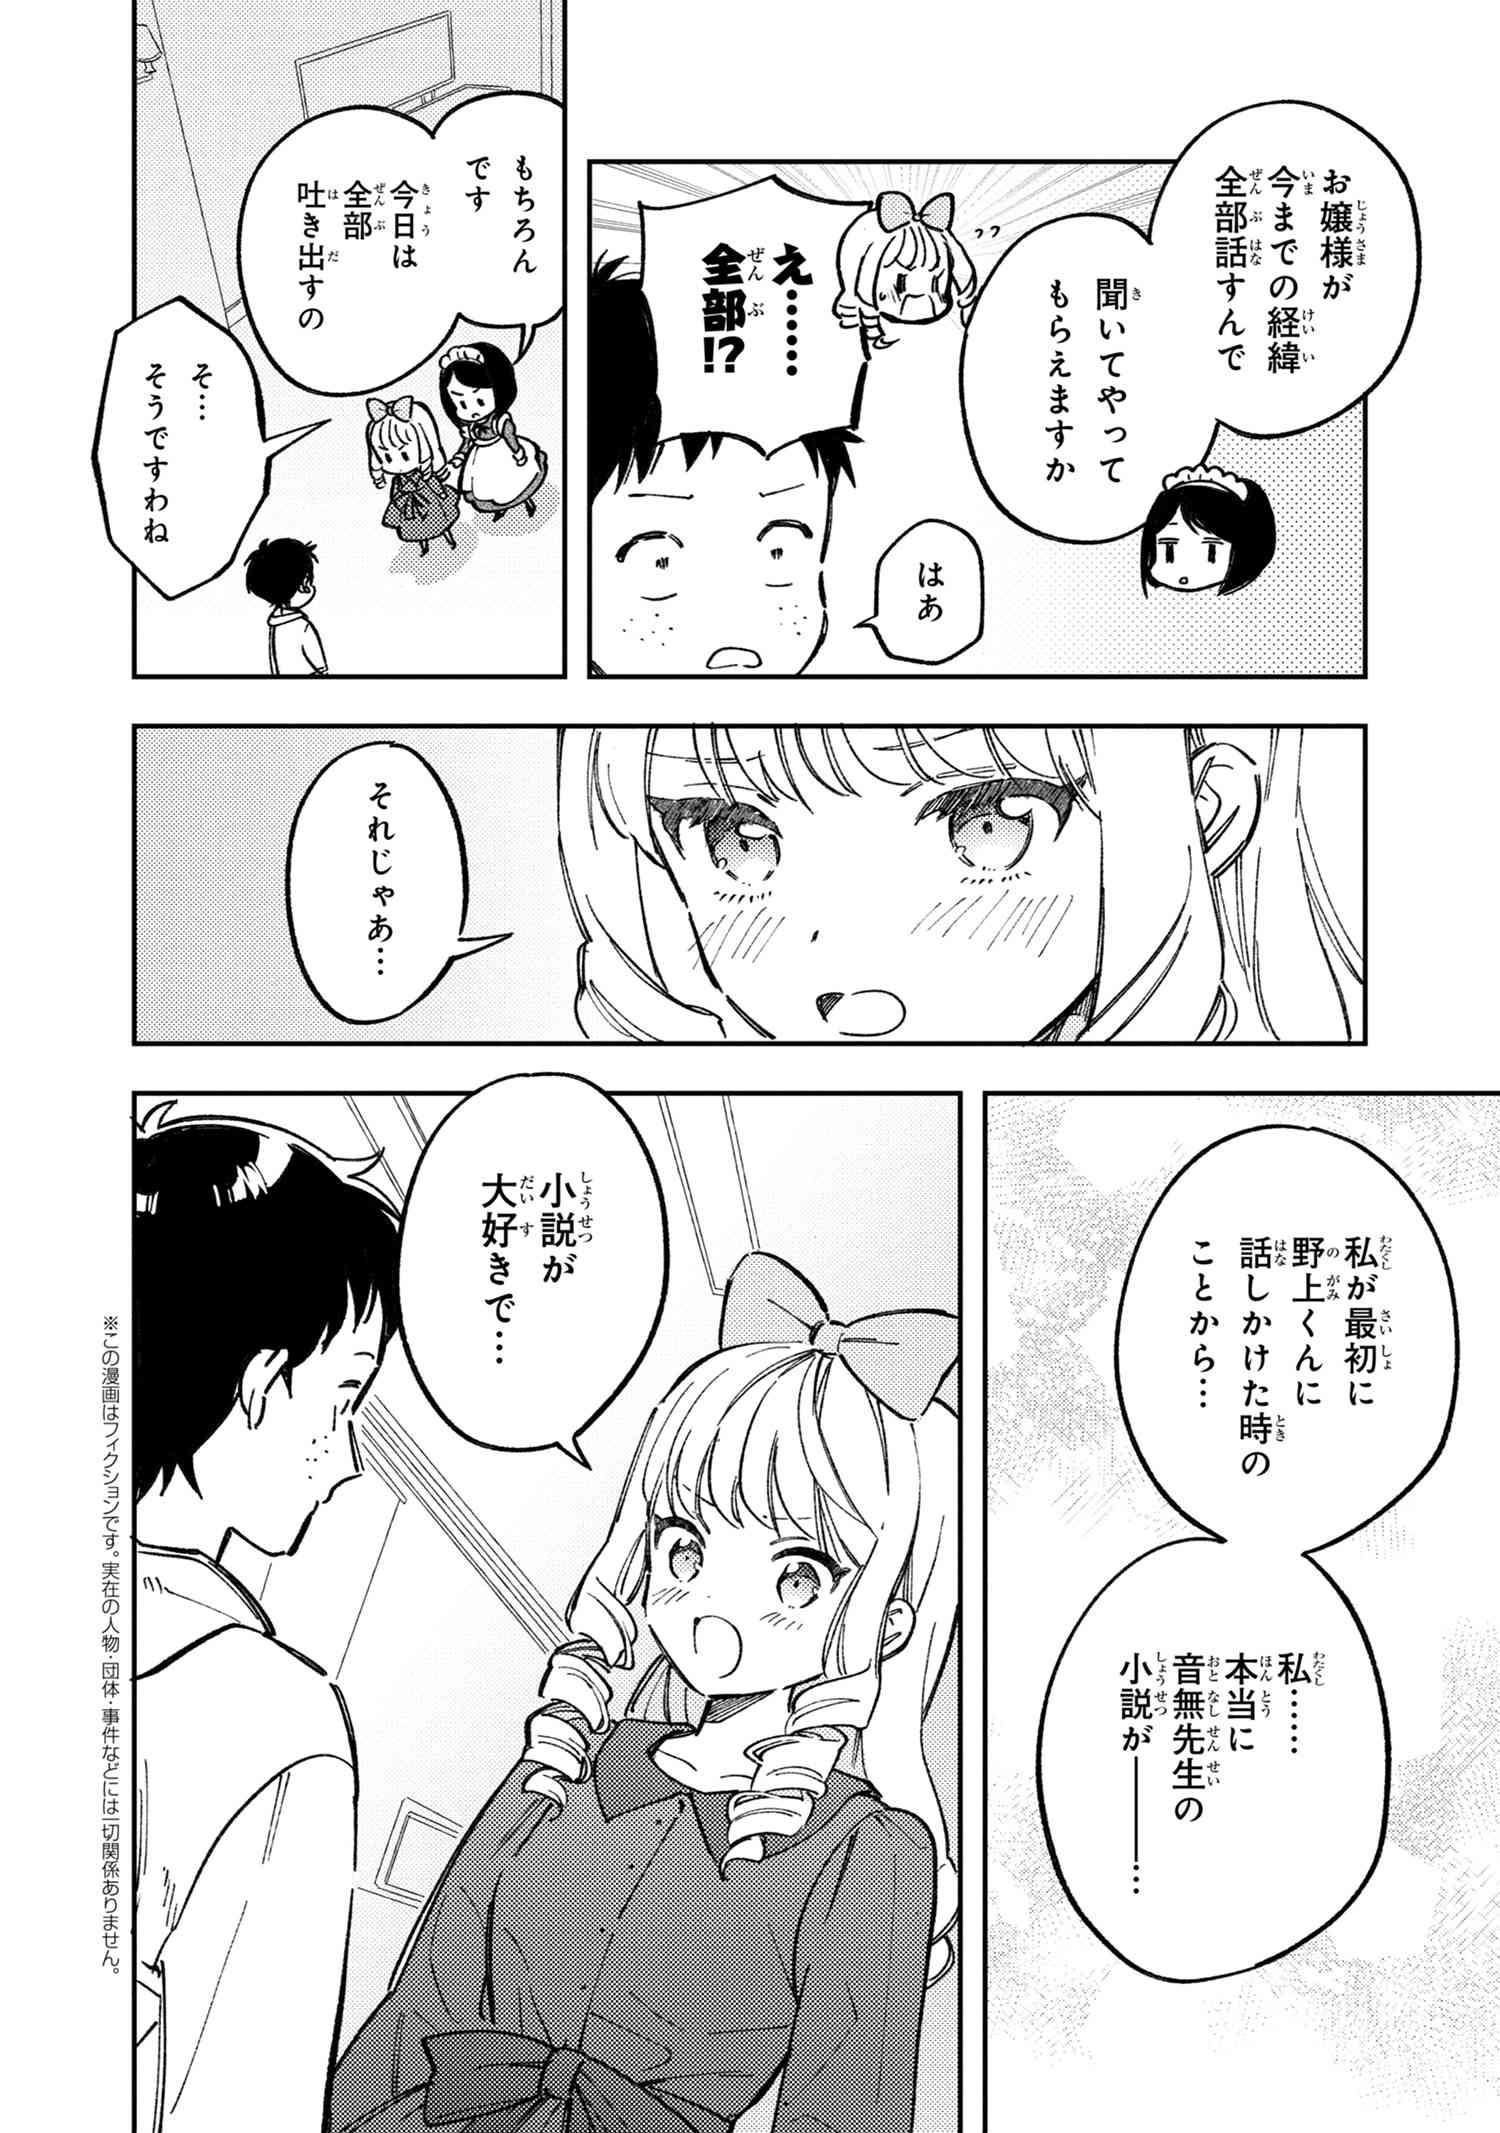 Houjou Urara no renai shousetsu o kaki nasai! - Chapter 15.5 - Page 2